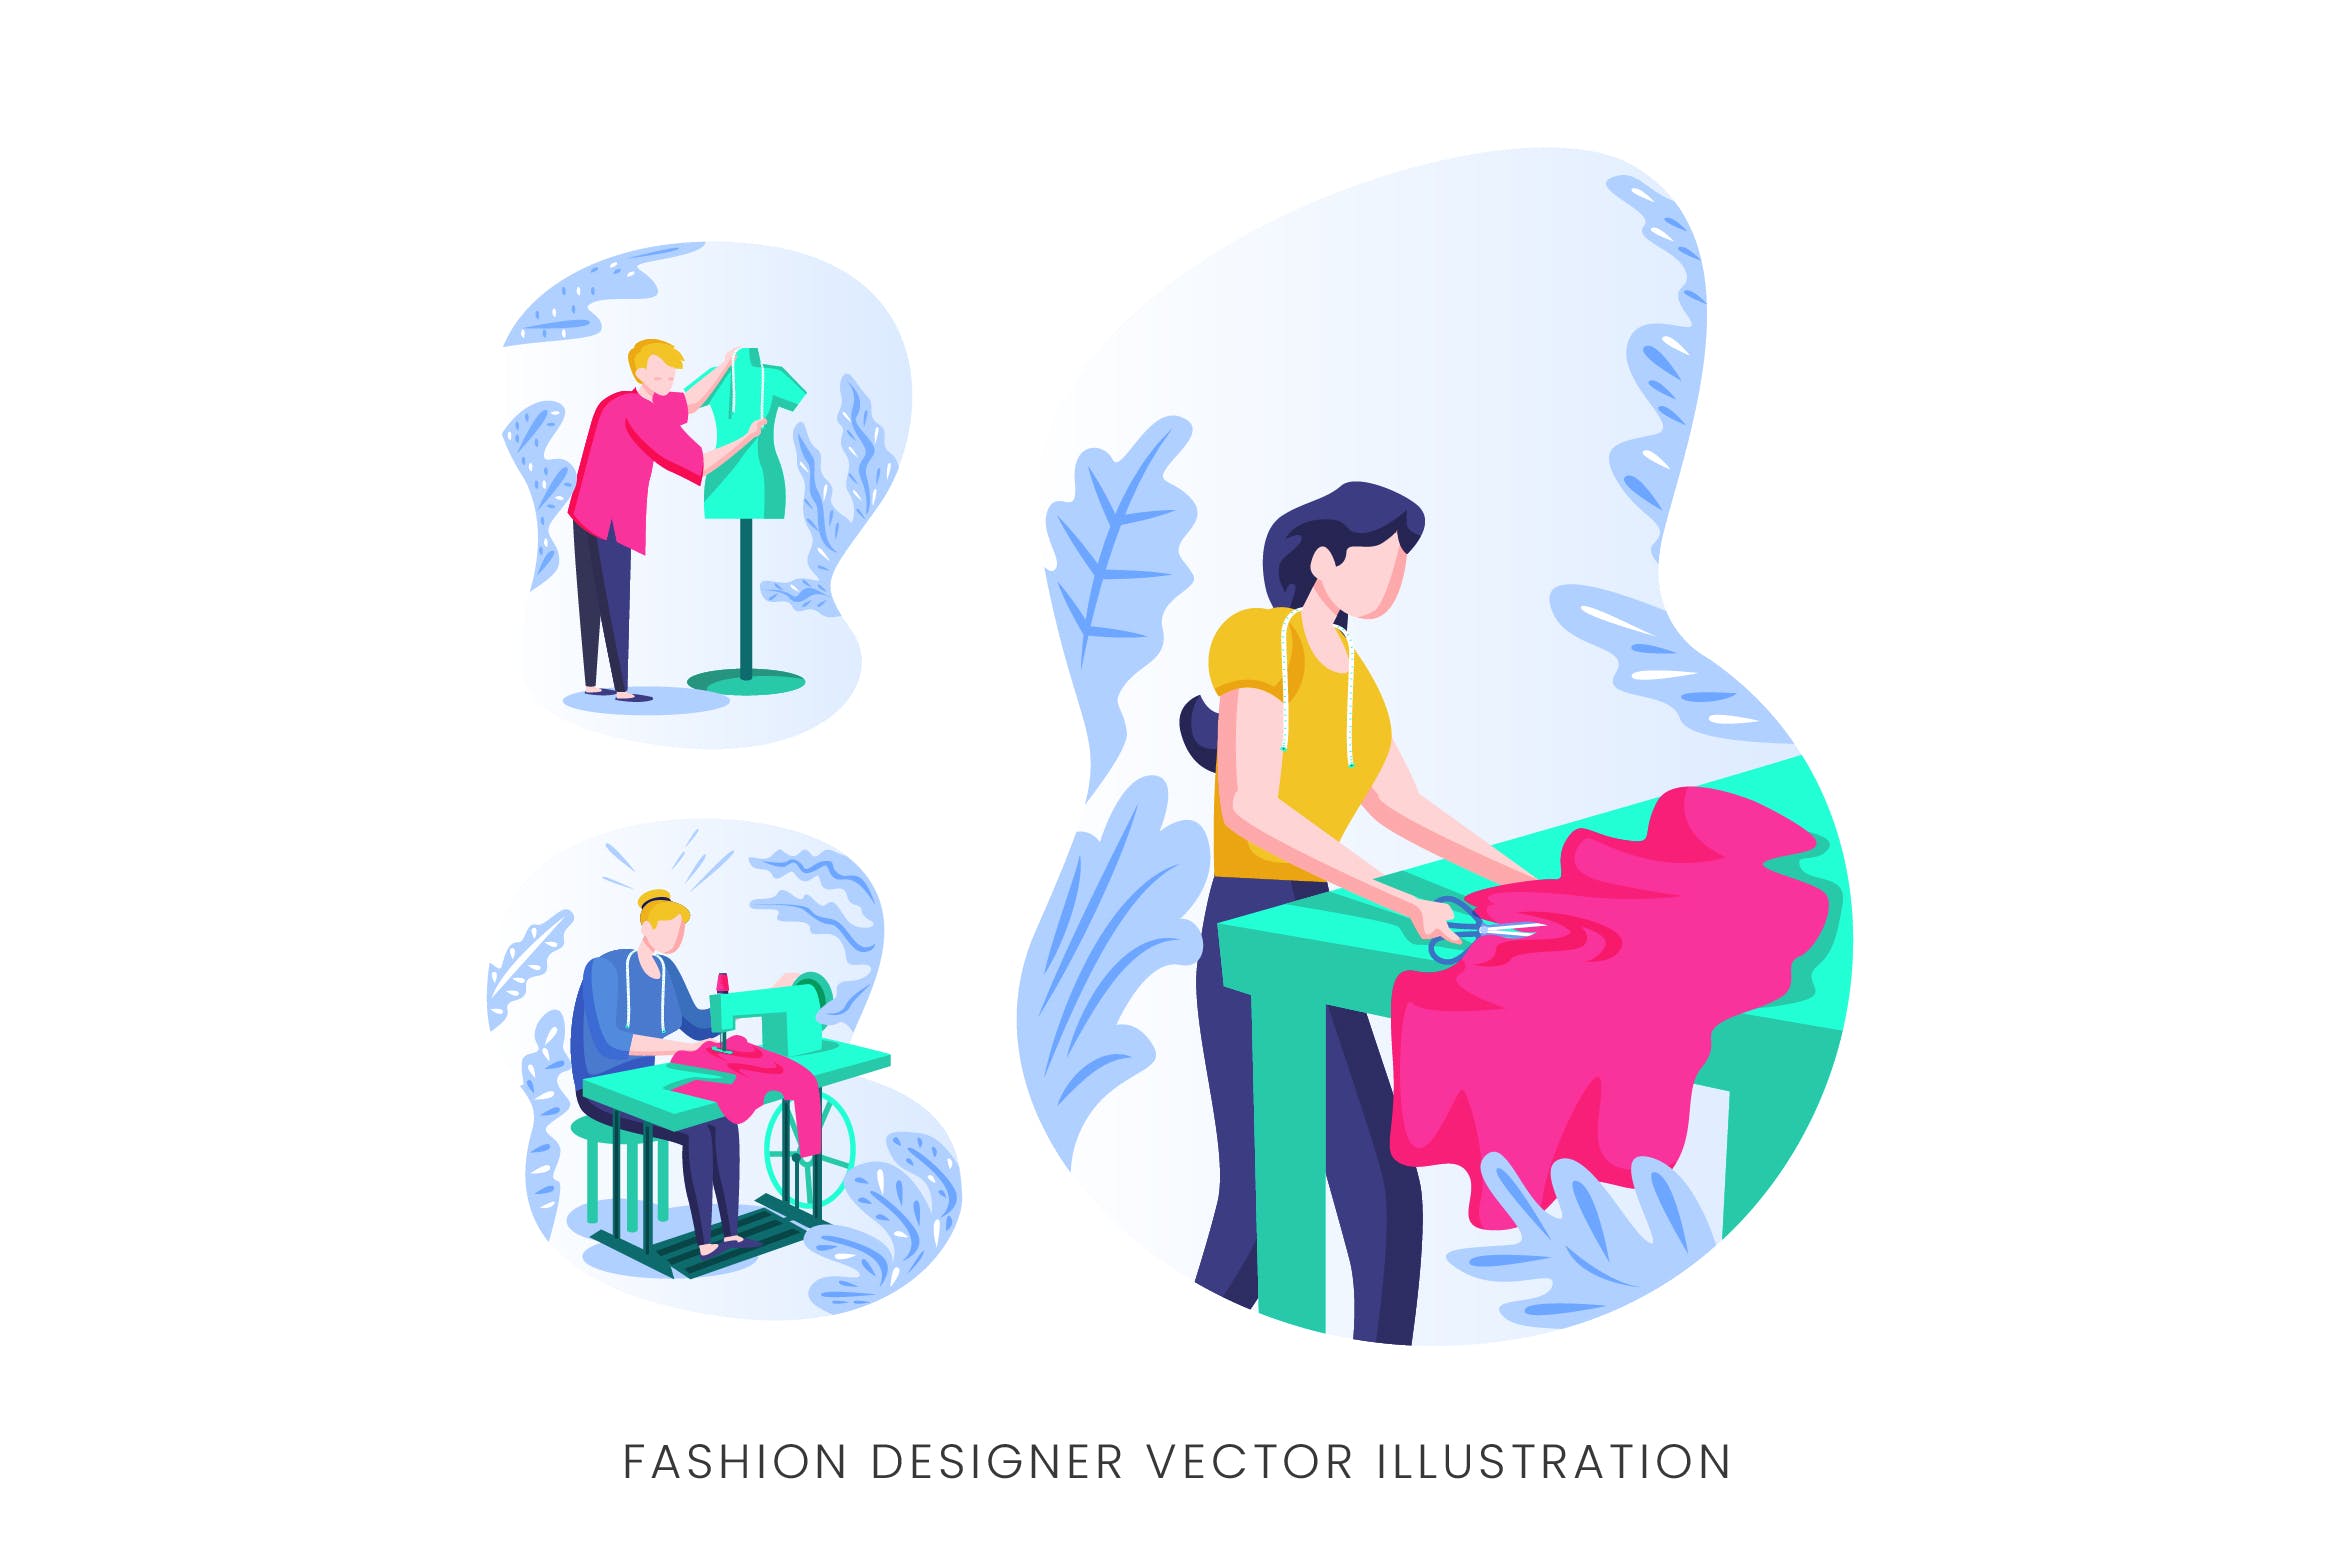 时装设计师人物形象矢量手绘手绘第一素材精选设计素材 Fashion Designer Vector Character Set插图